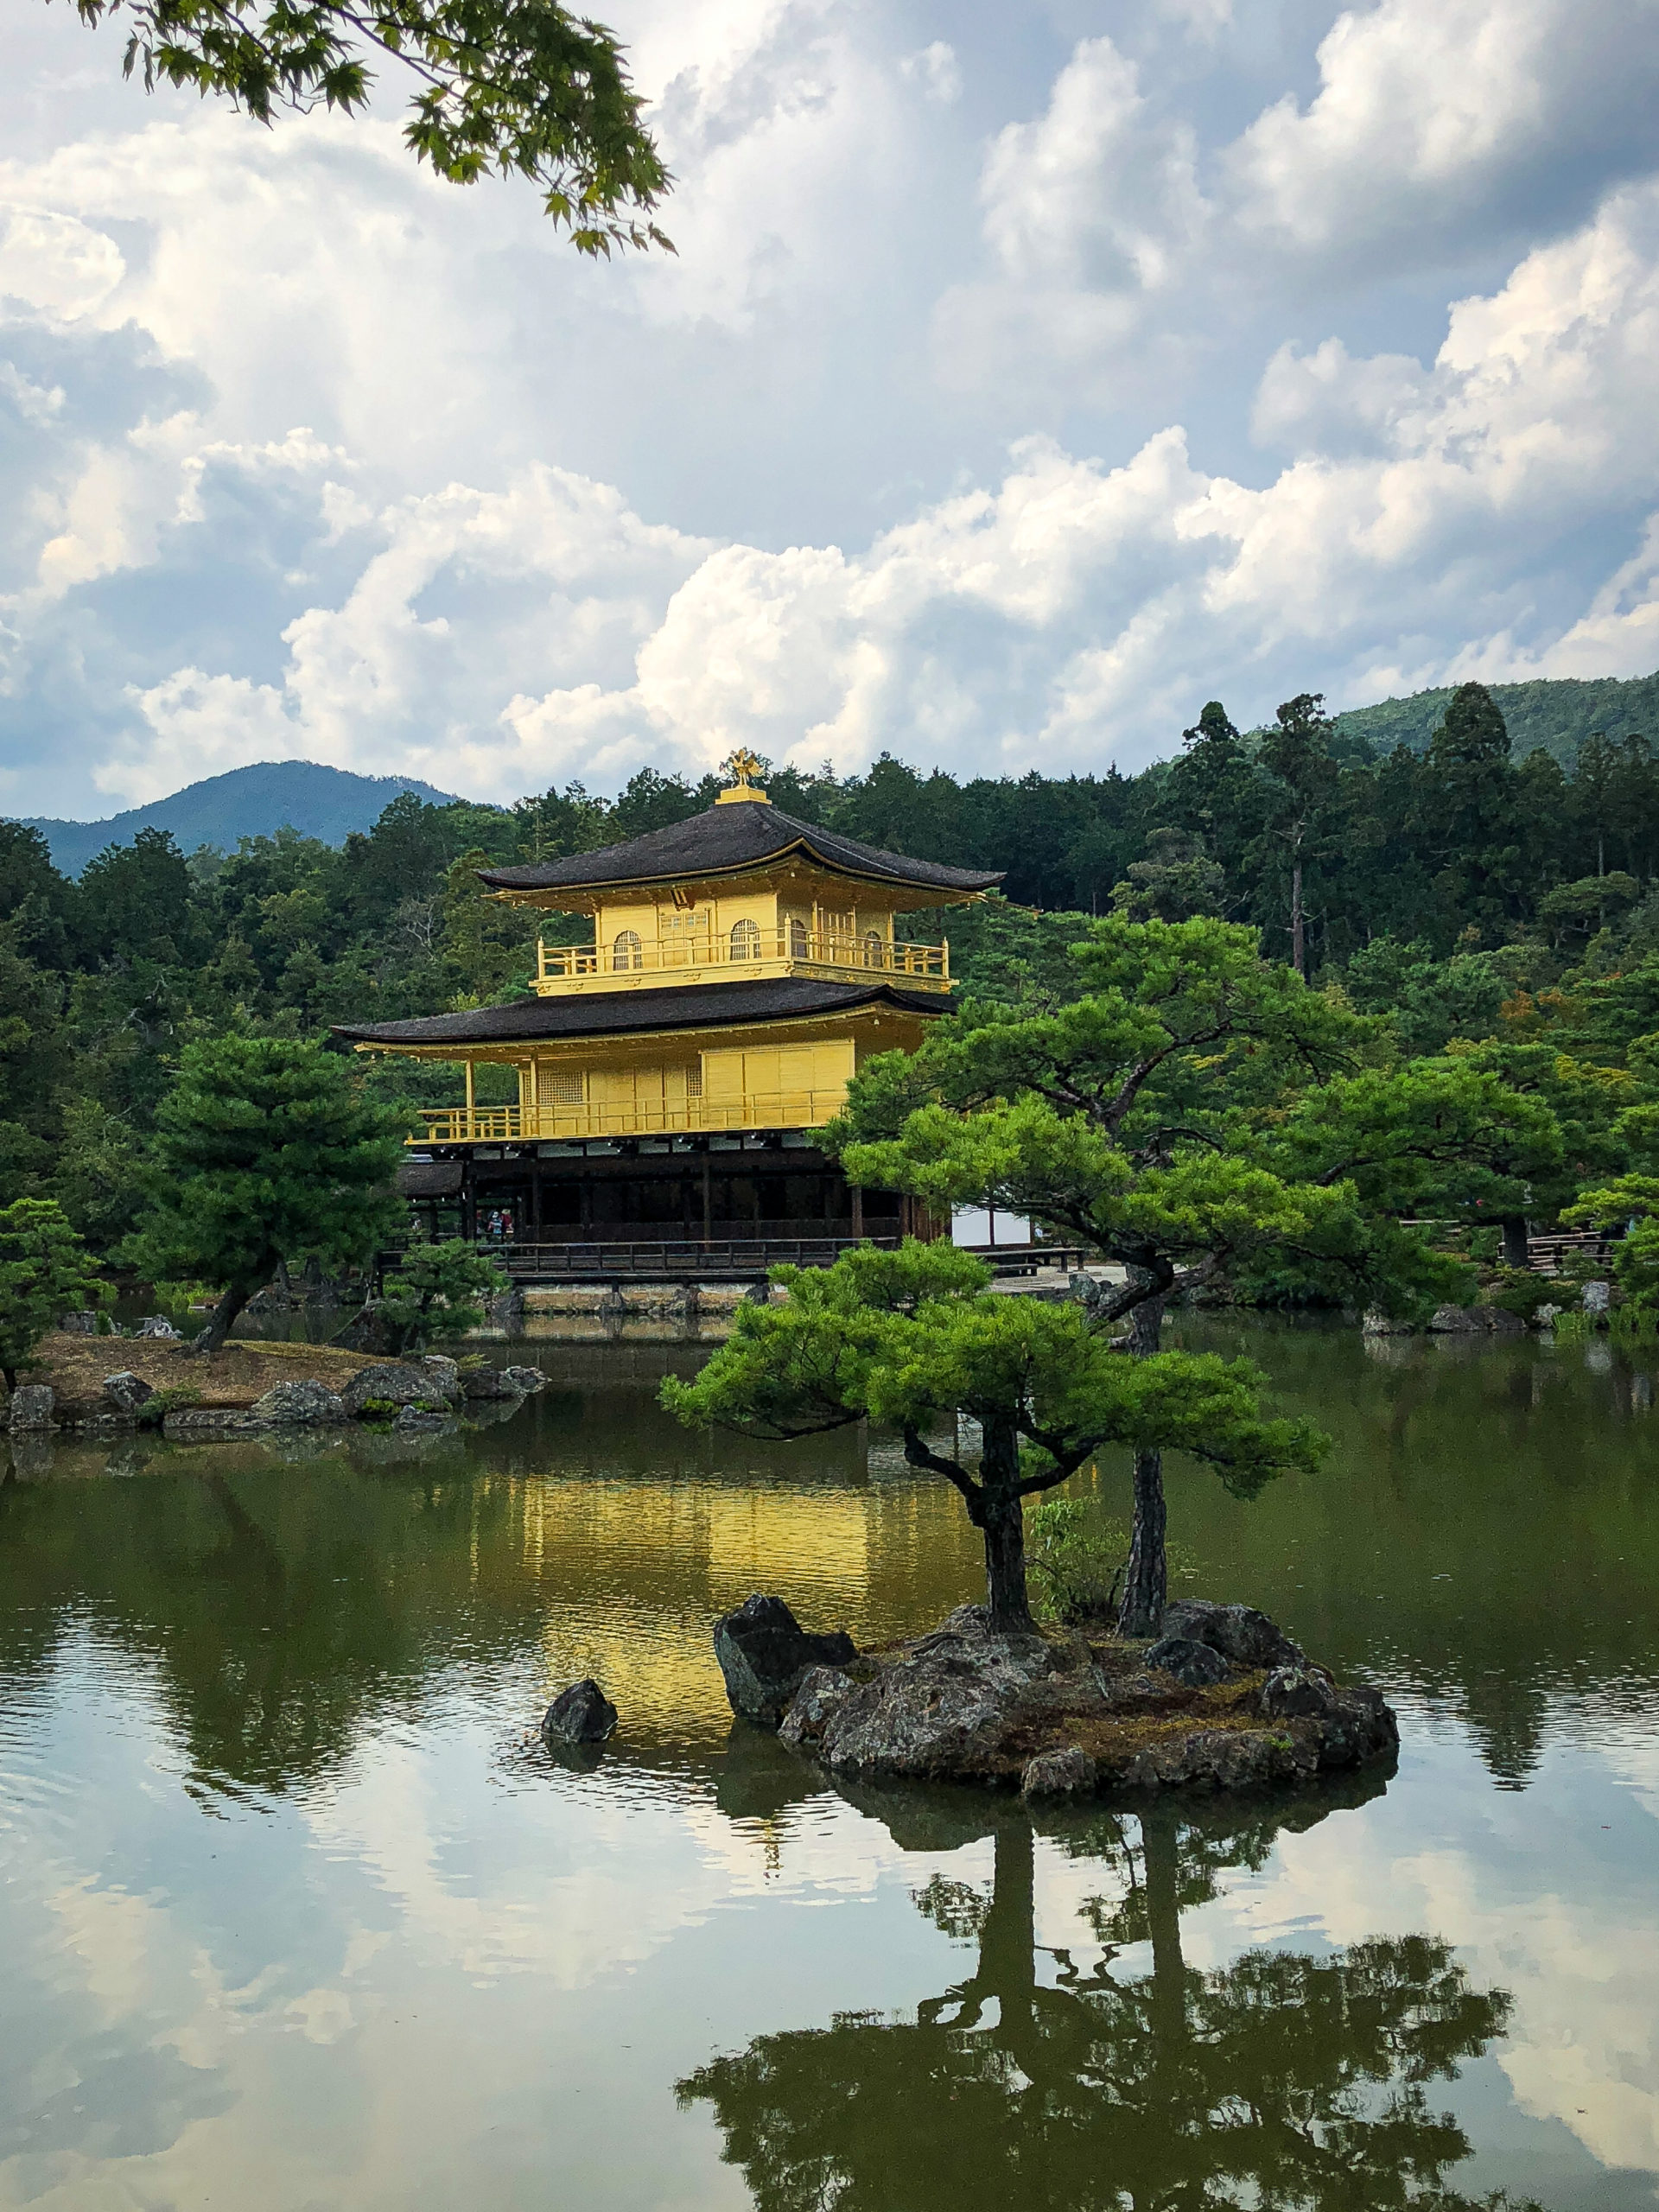 Kinkakuji golden temple in Kyoto in Japan